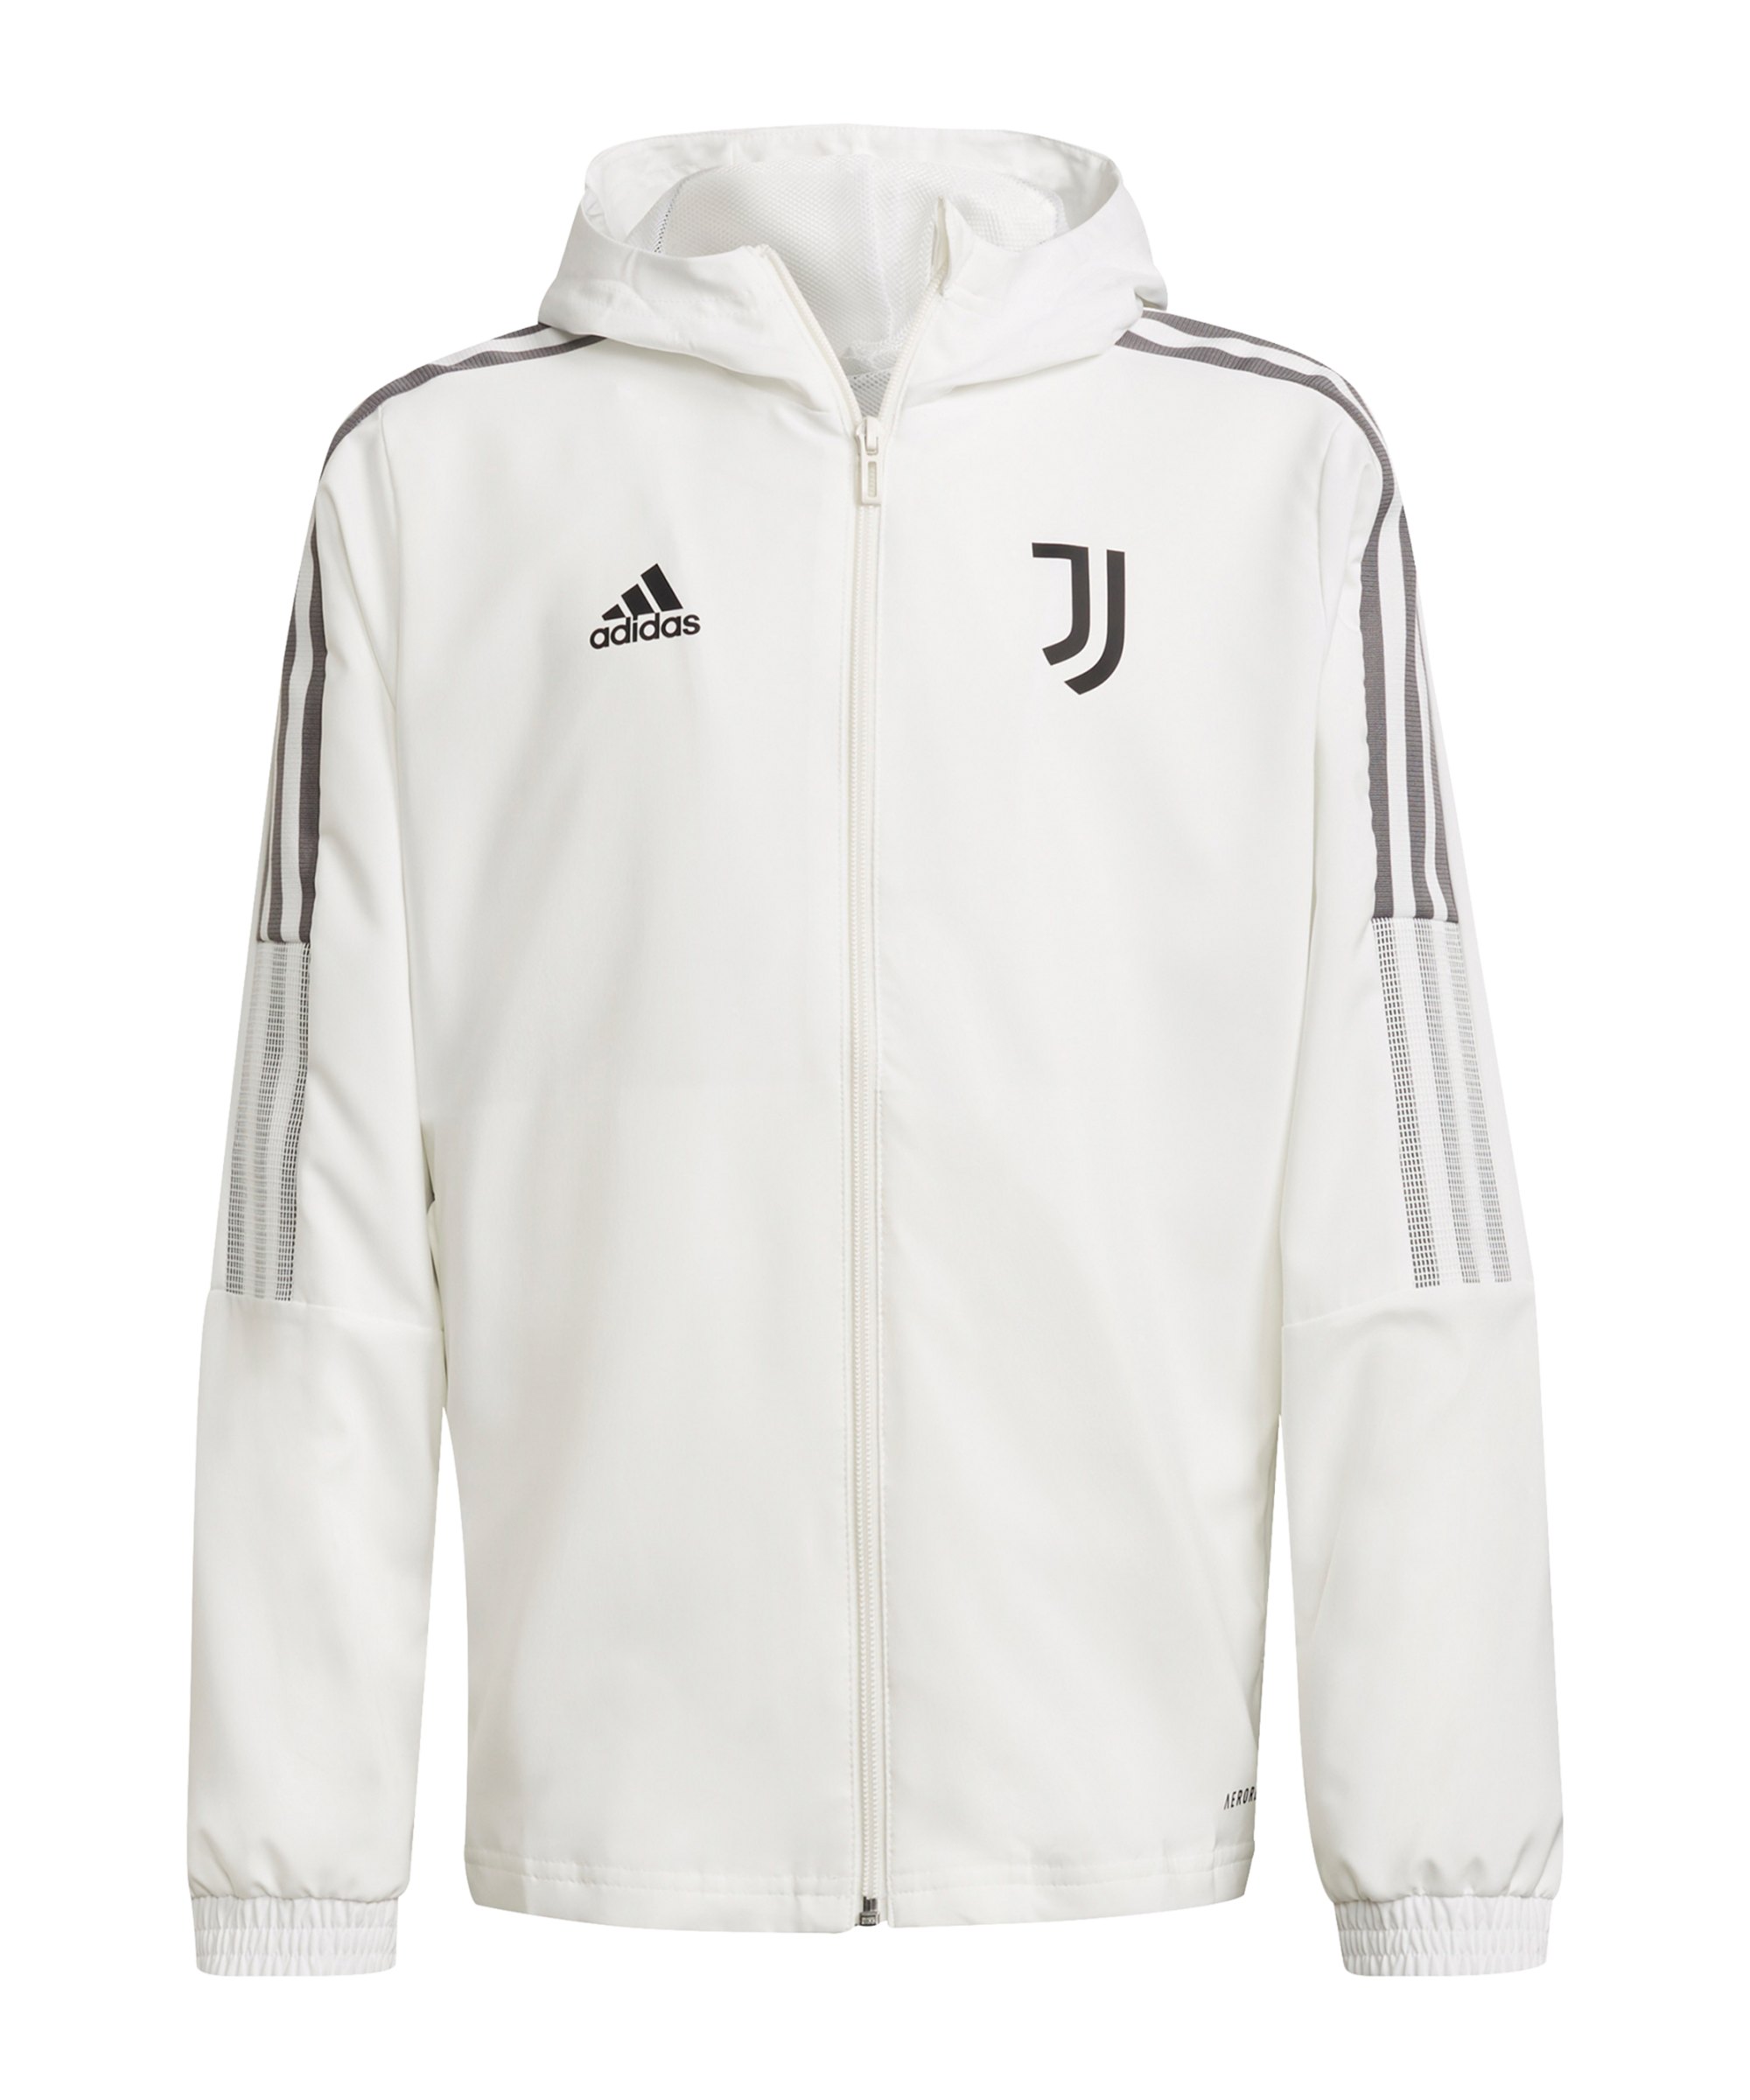 adidas Juventus Turin Prematch Jacke 2021/2022 Kids Weiss - weiss